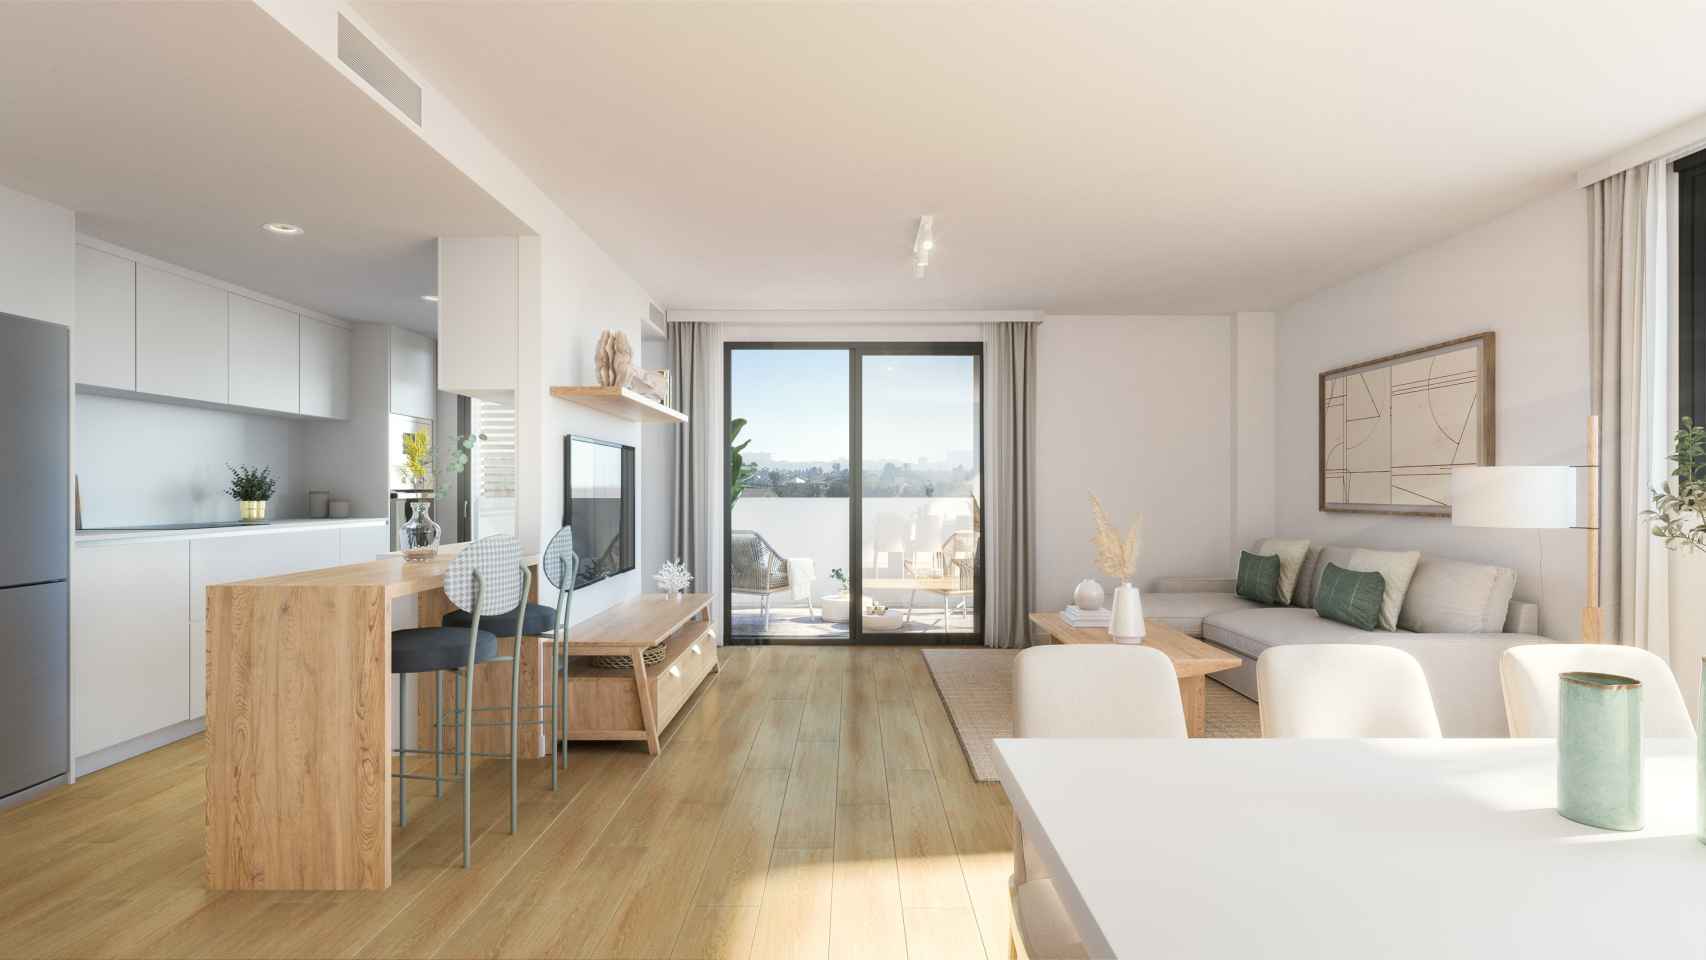 Salón con cocina integrada de las futuras viviendas de la promoción Alhora de AEDAS Homes en el nuevo barrio de Nou Nazareth en Sant Joan d'Alacant.